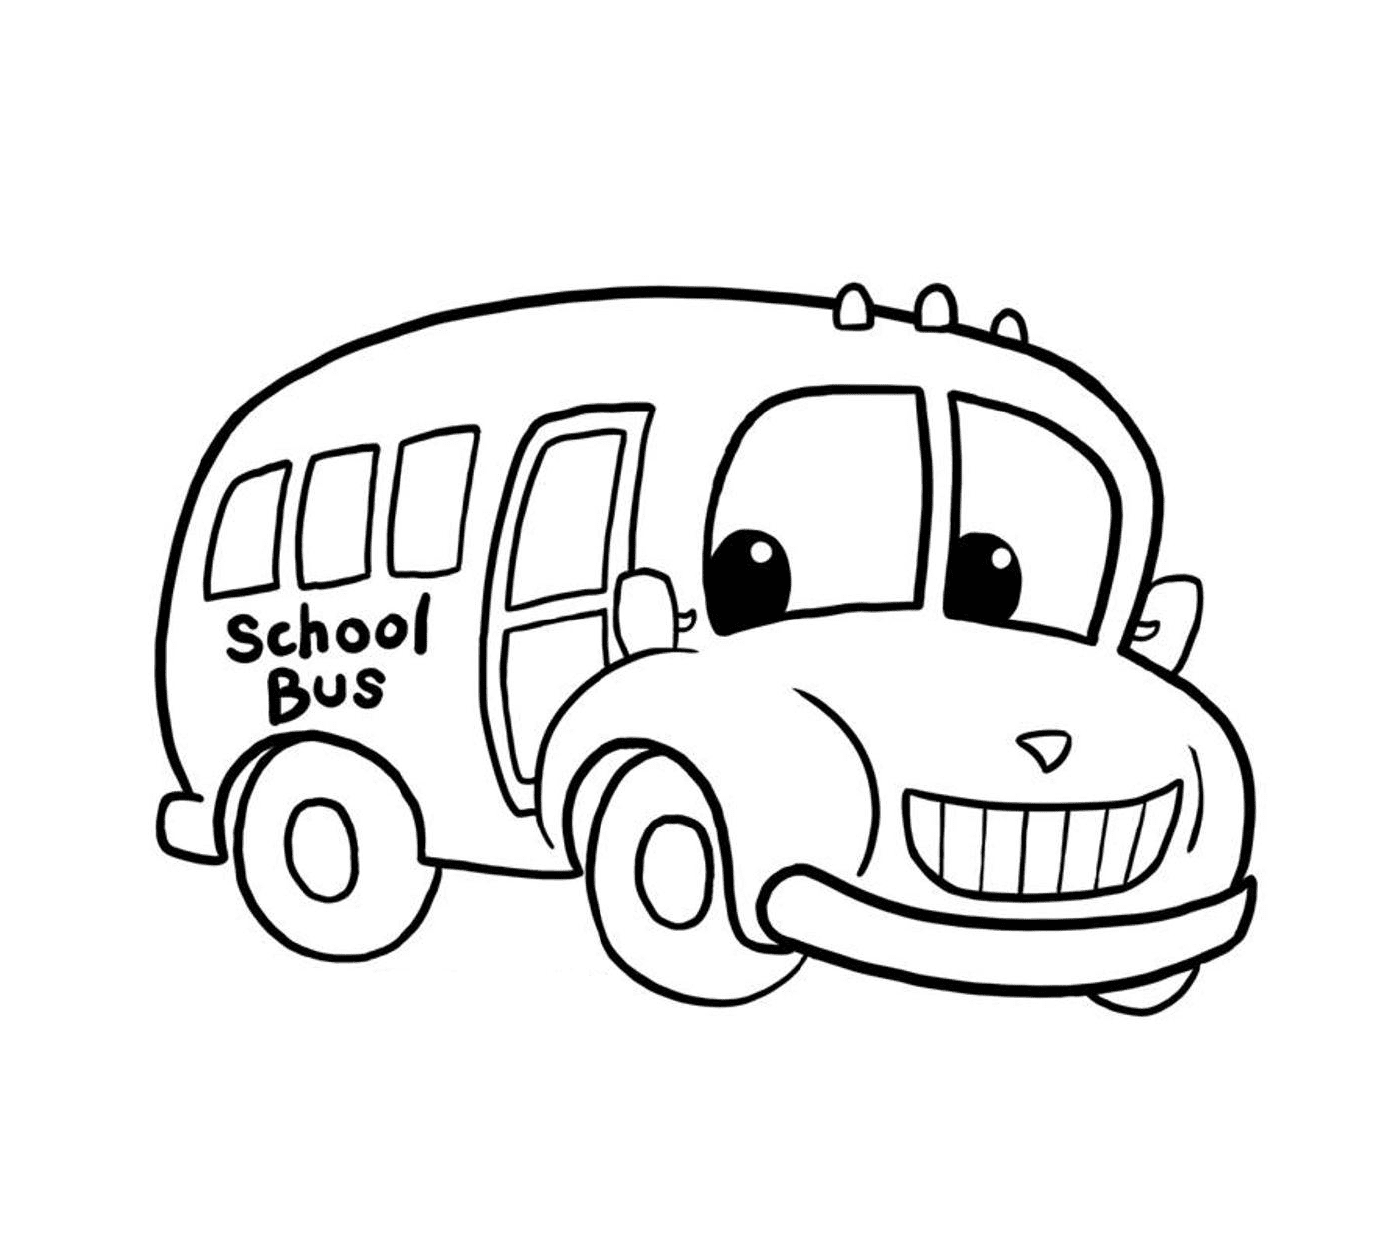   Un bus scolaire transporte les enfants 